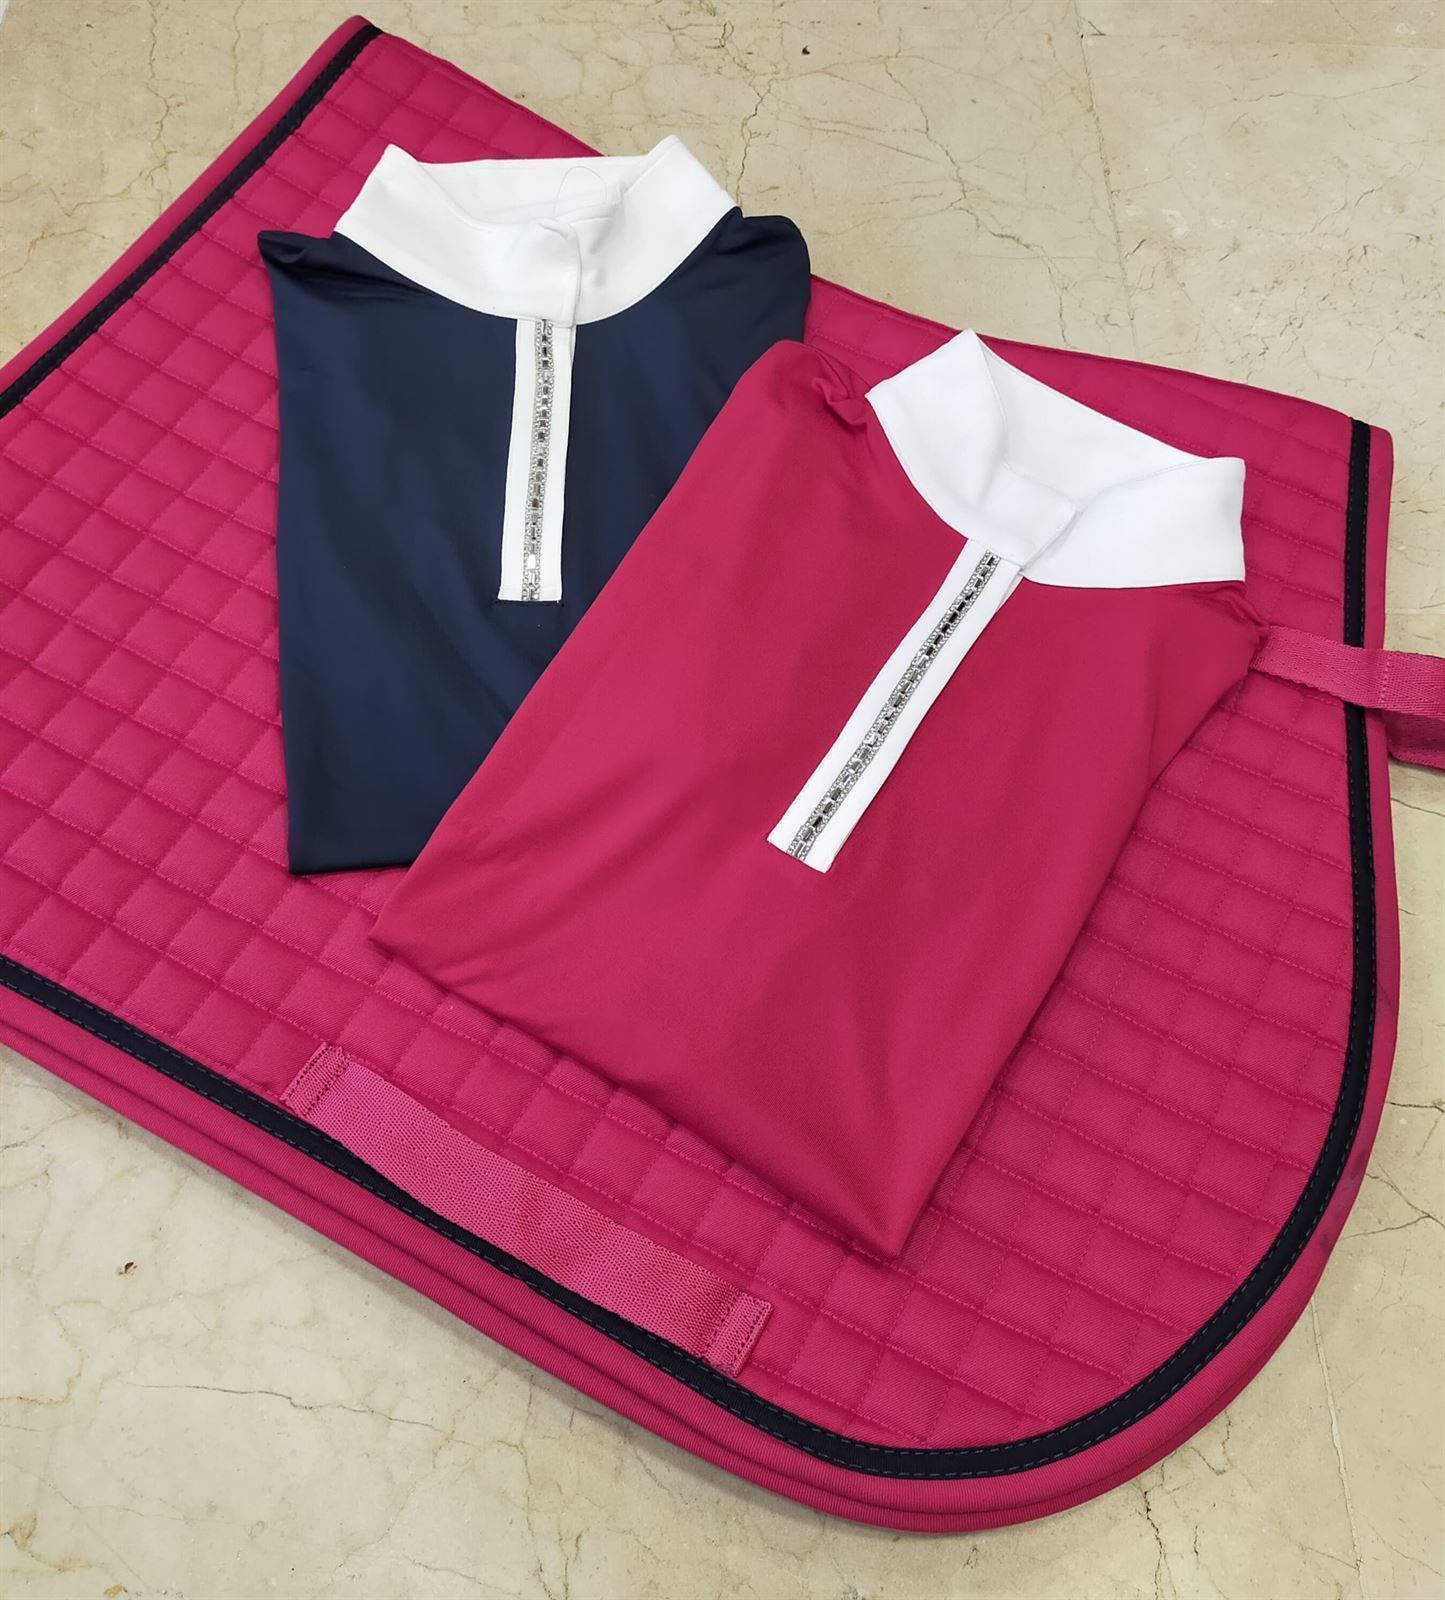 Mantilla HKM Sports Equipment Charly, USO GENERAL, color rosa fucsia, talla PONY - Imagen 3